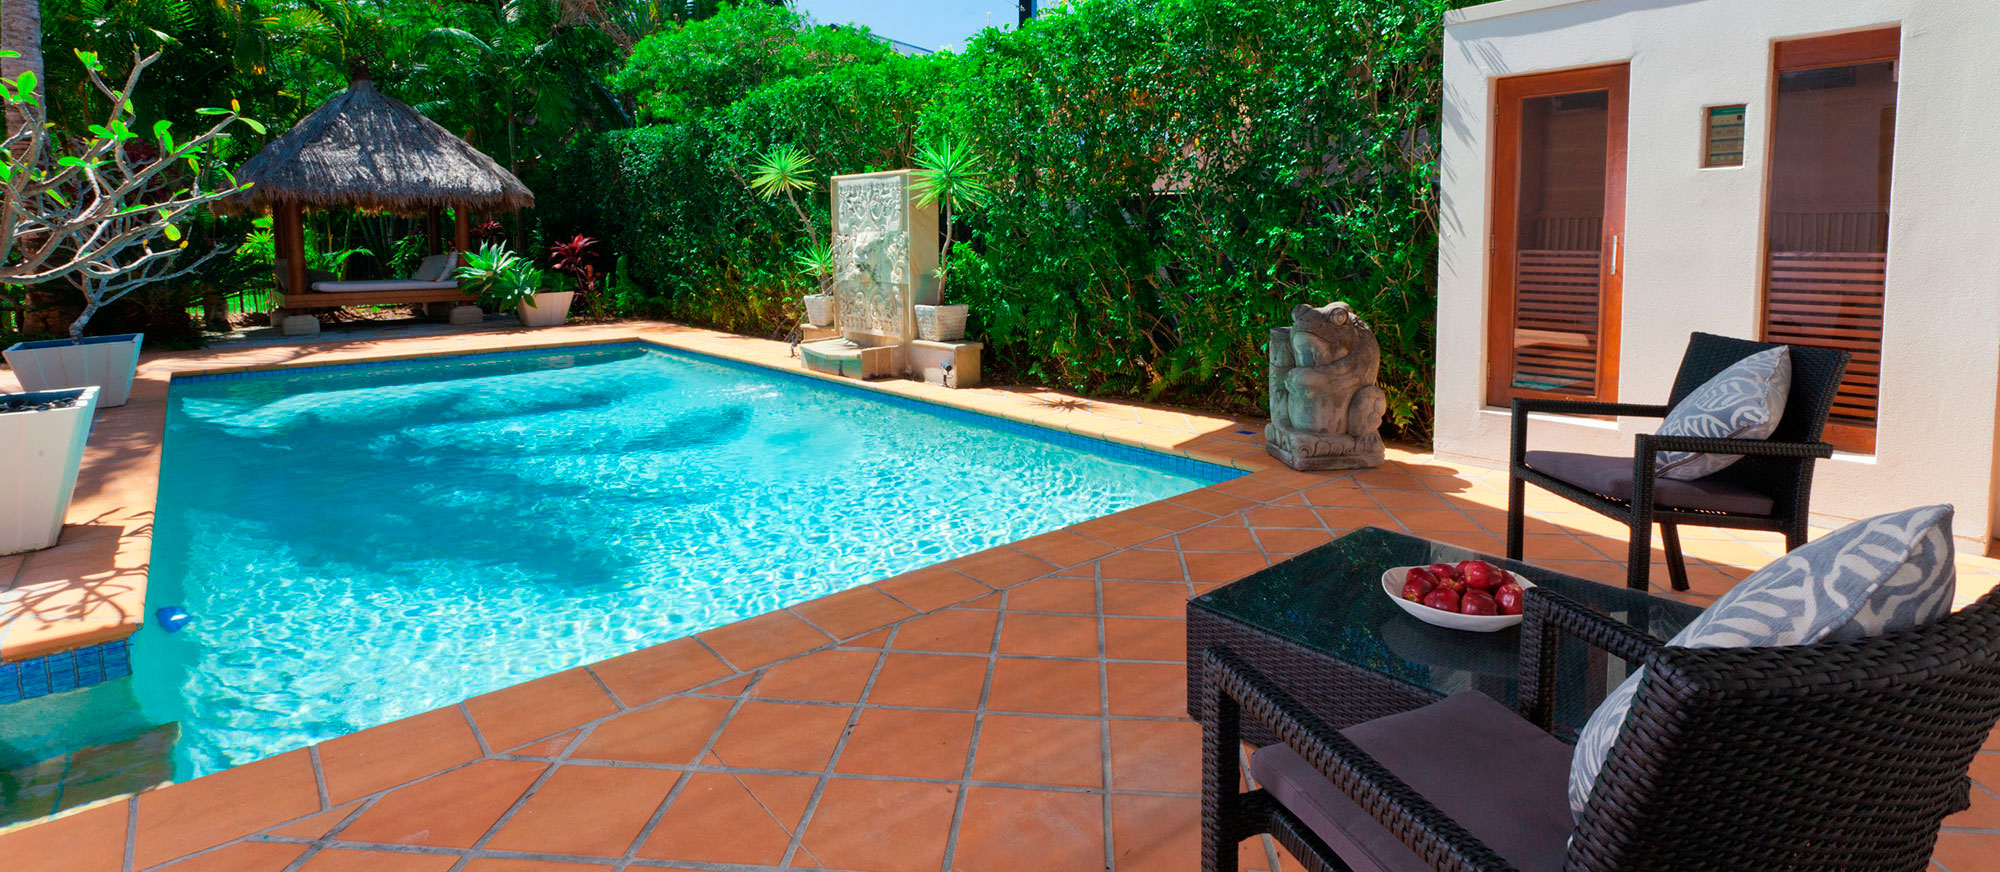 backyard-with-swimming-pool